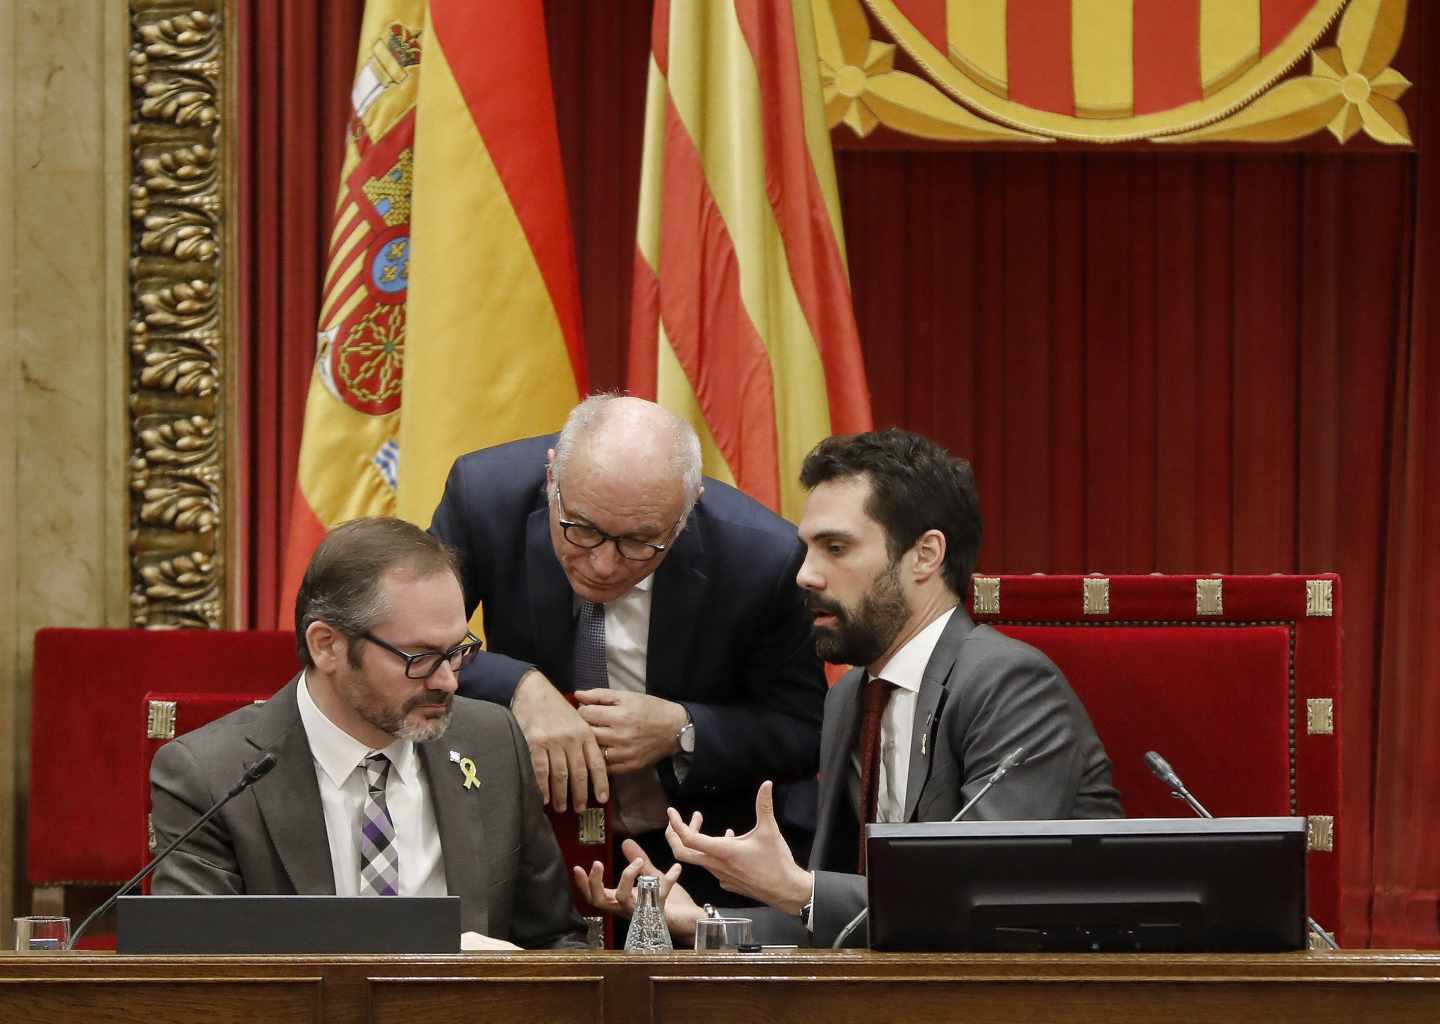 El presidente del Parlament, Roger Torrent, junto al vicepresidente primero Josep Costa (izqda.) y el letrado Xavier Muro.